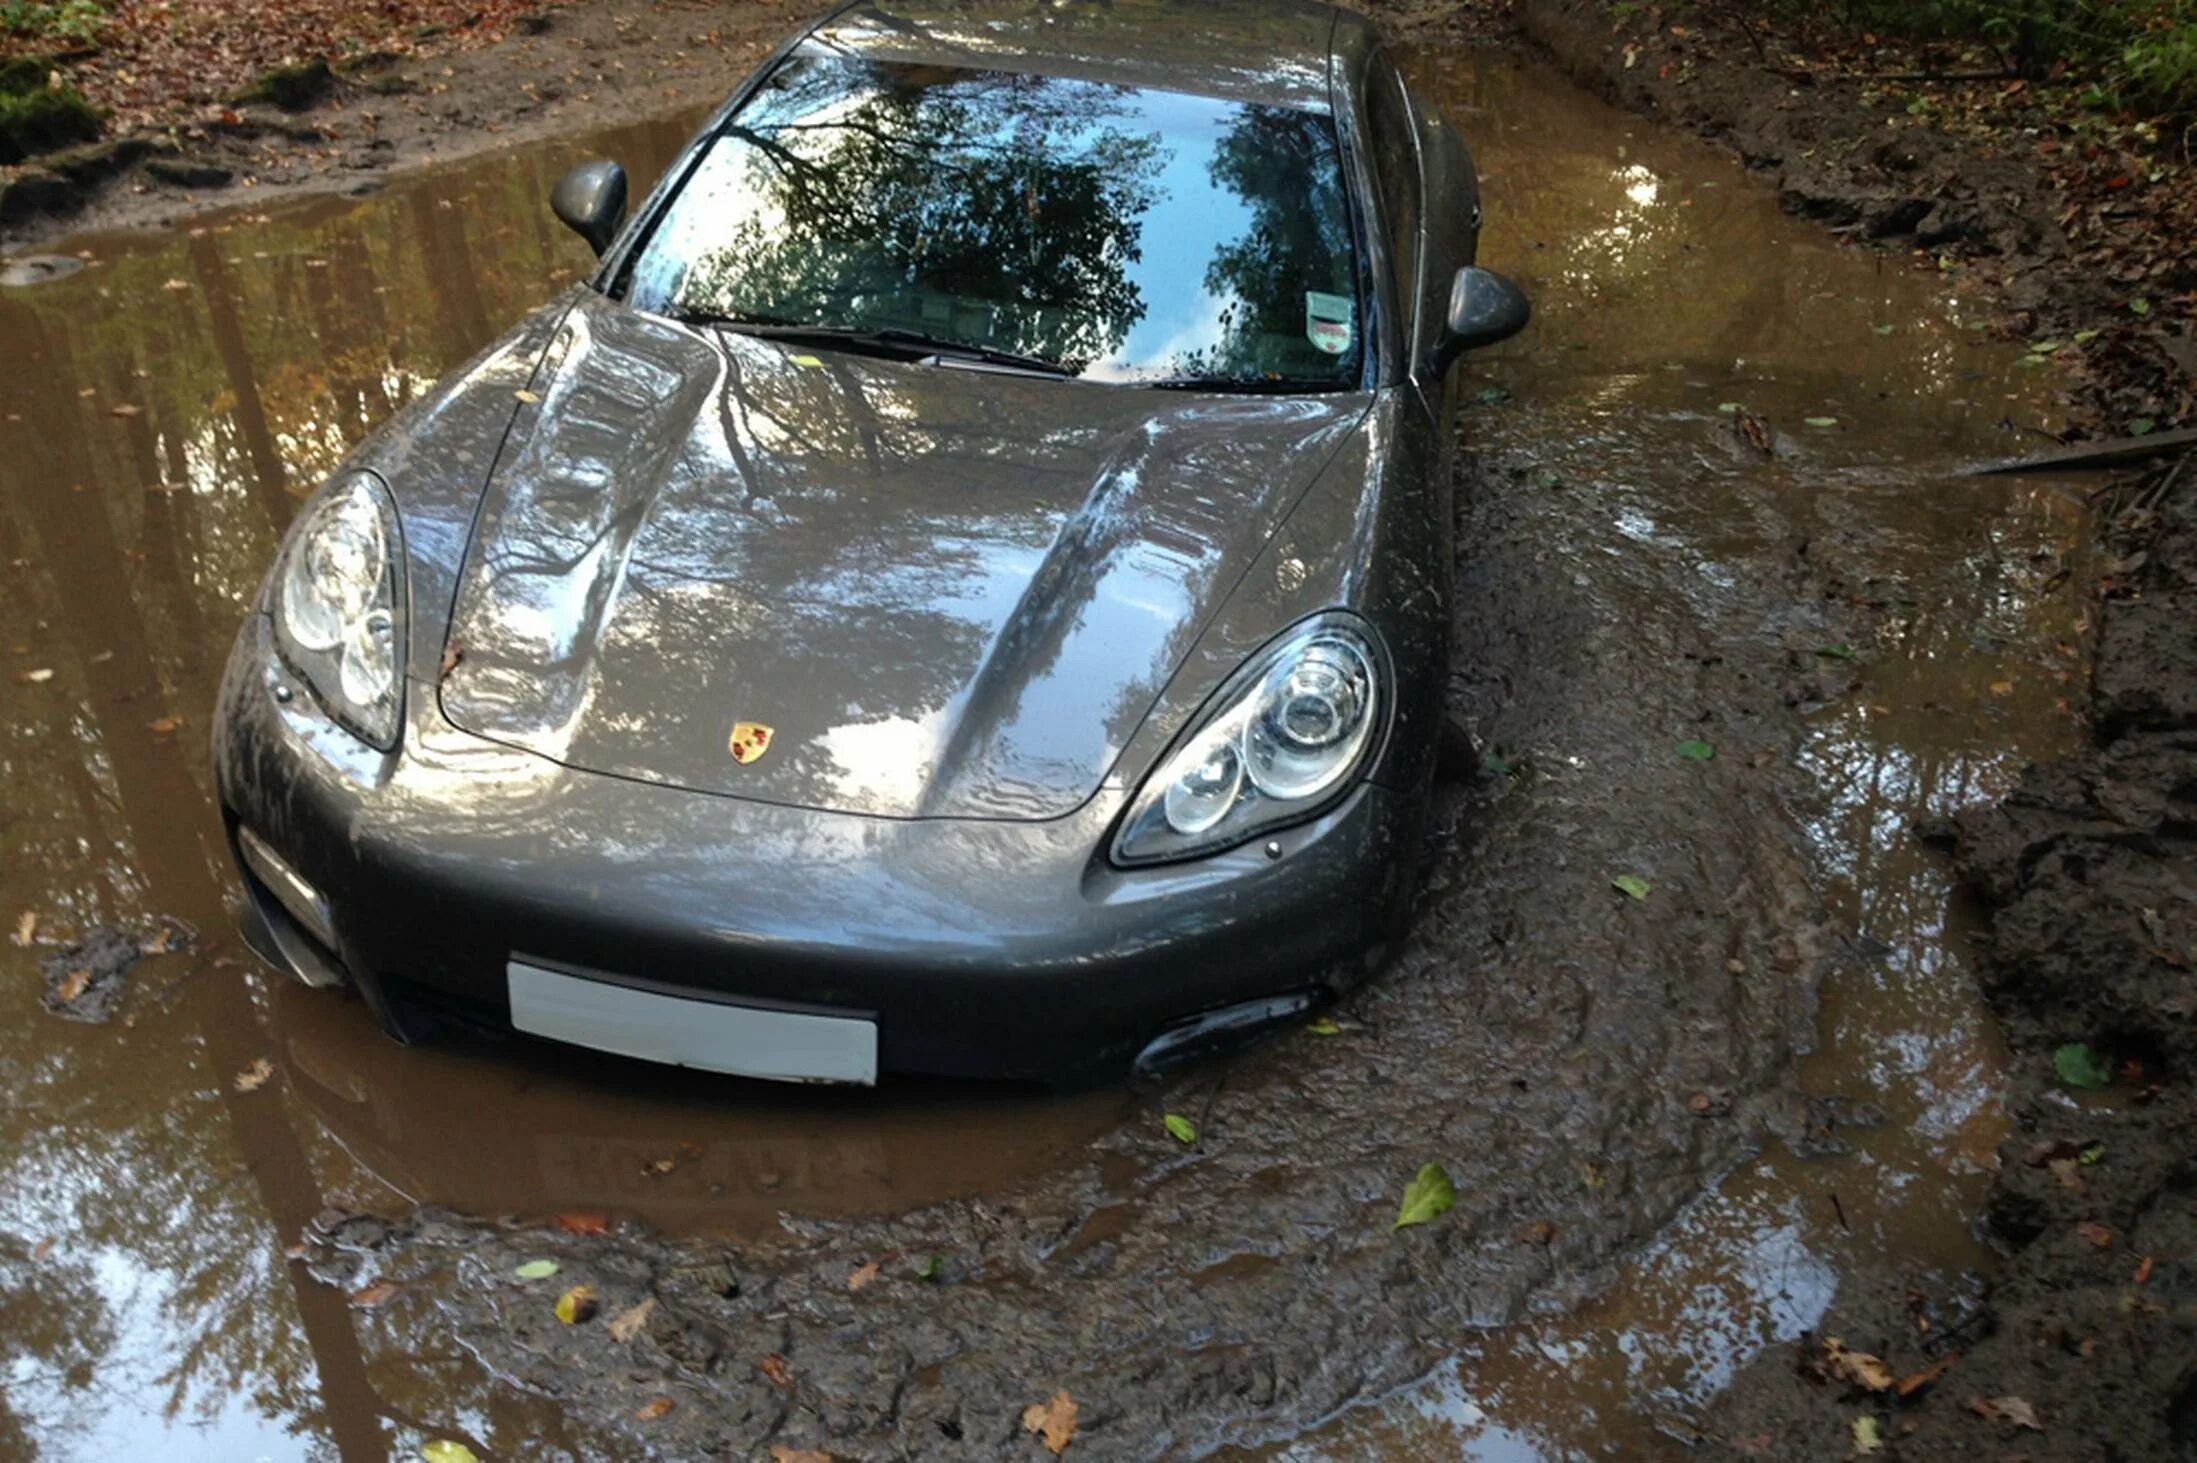 Порше Панамера и грязь. Машина в грязи. Автомобиль утопленник. Автомобиль в болоте.